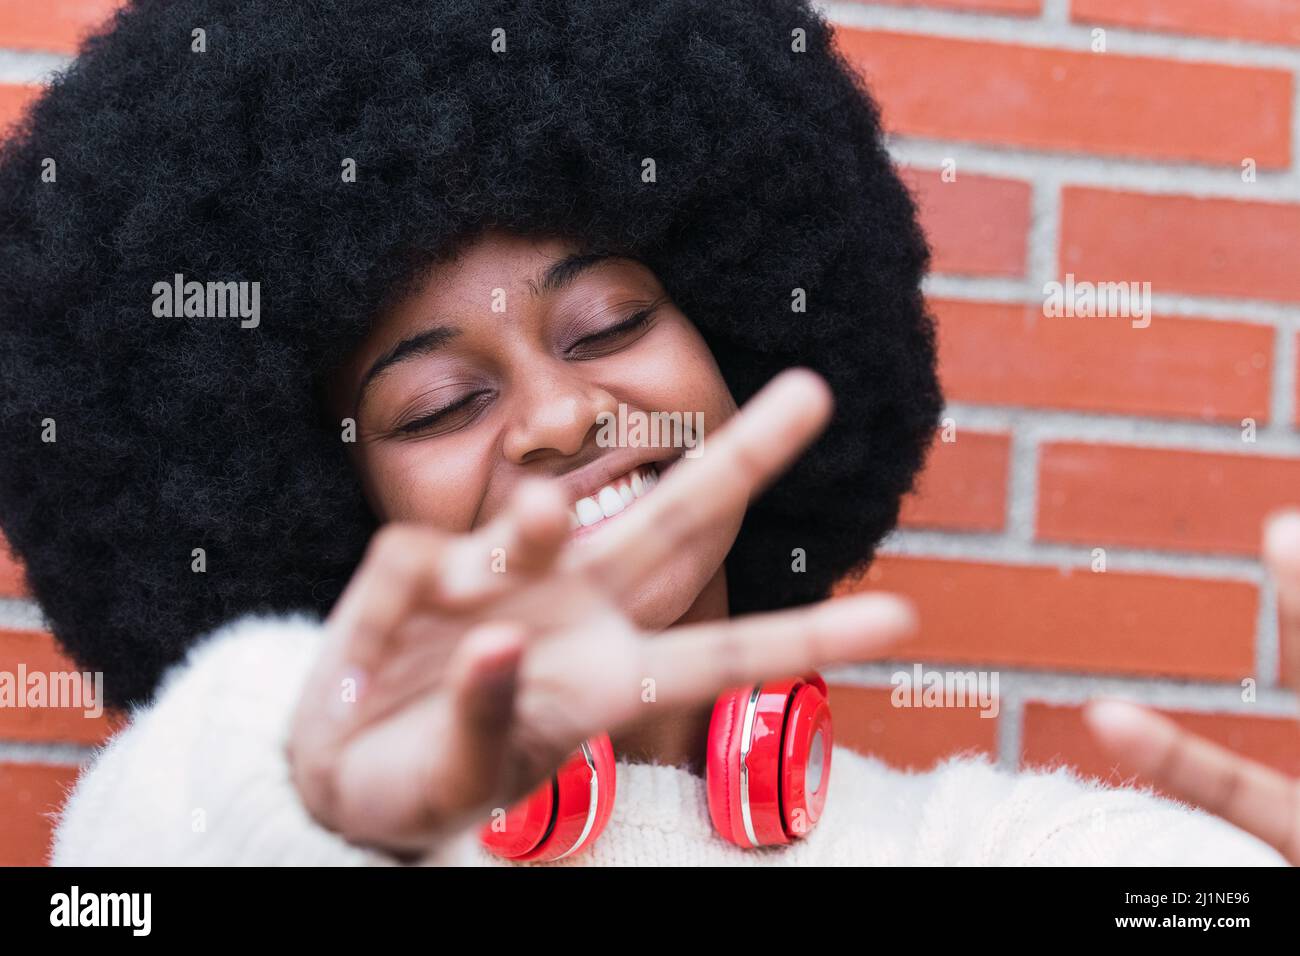 Gros plan portrait de la belle femme afro-américaine avec une coiffure afro-américaine, un pull blanc et des yeux fermés souriant tout en montrant le geste de paix Banque D'Images